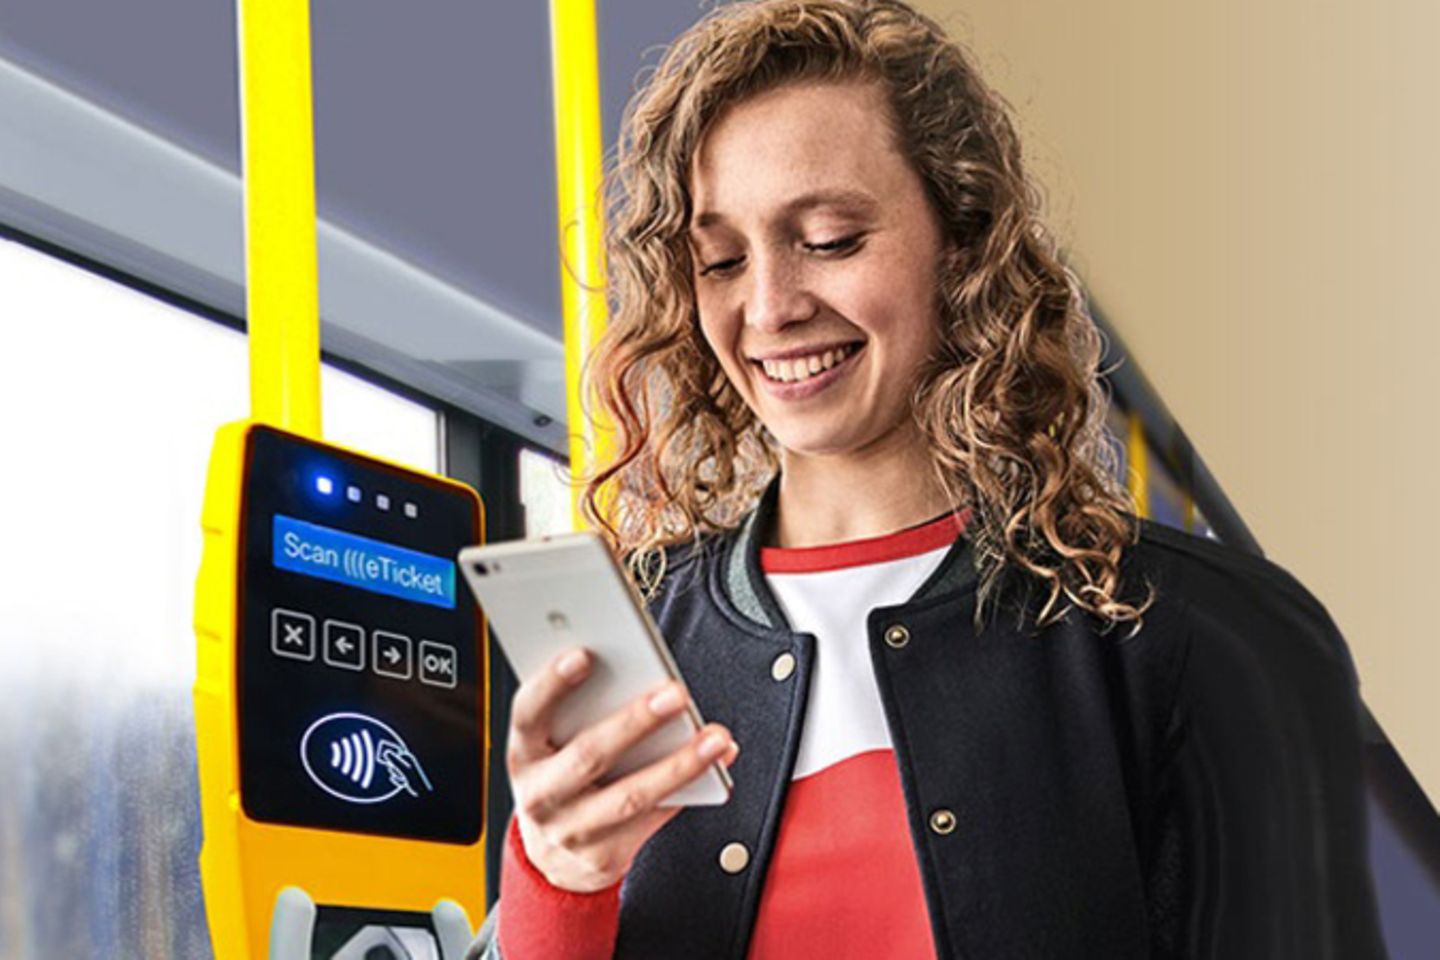 Une femme se tient dans le bus à côté d’un distributeur de tickets sans contact, et regarde son smartphone.